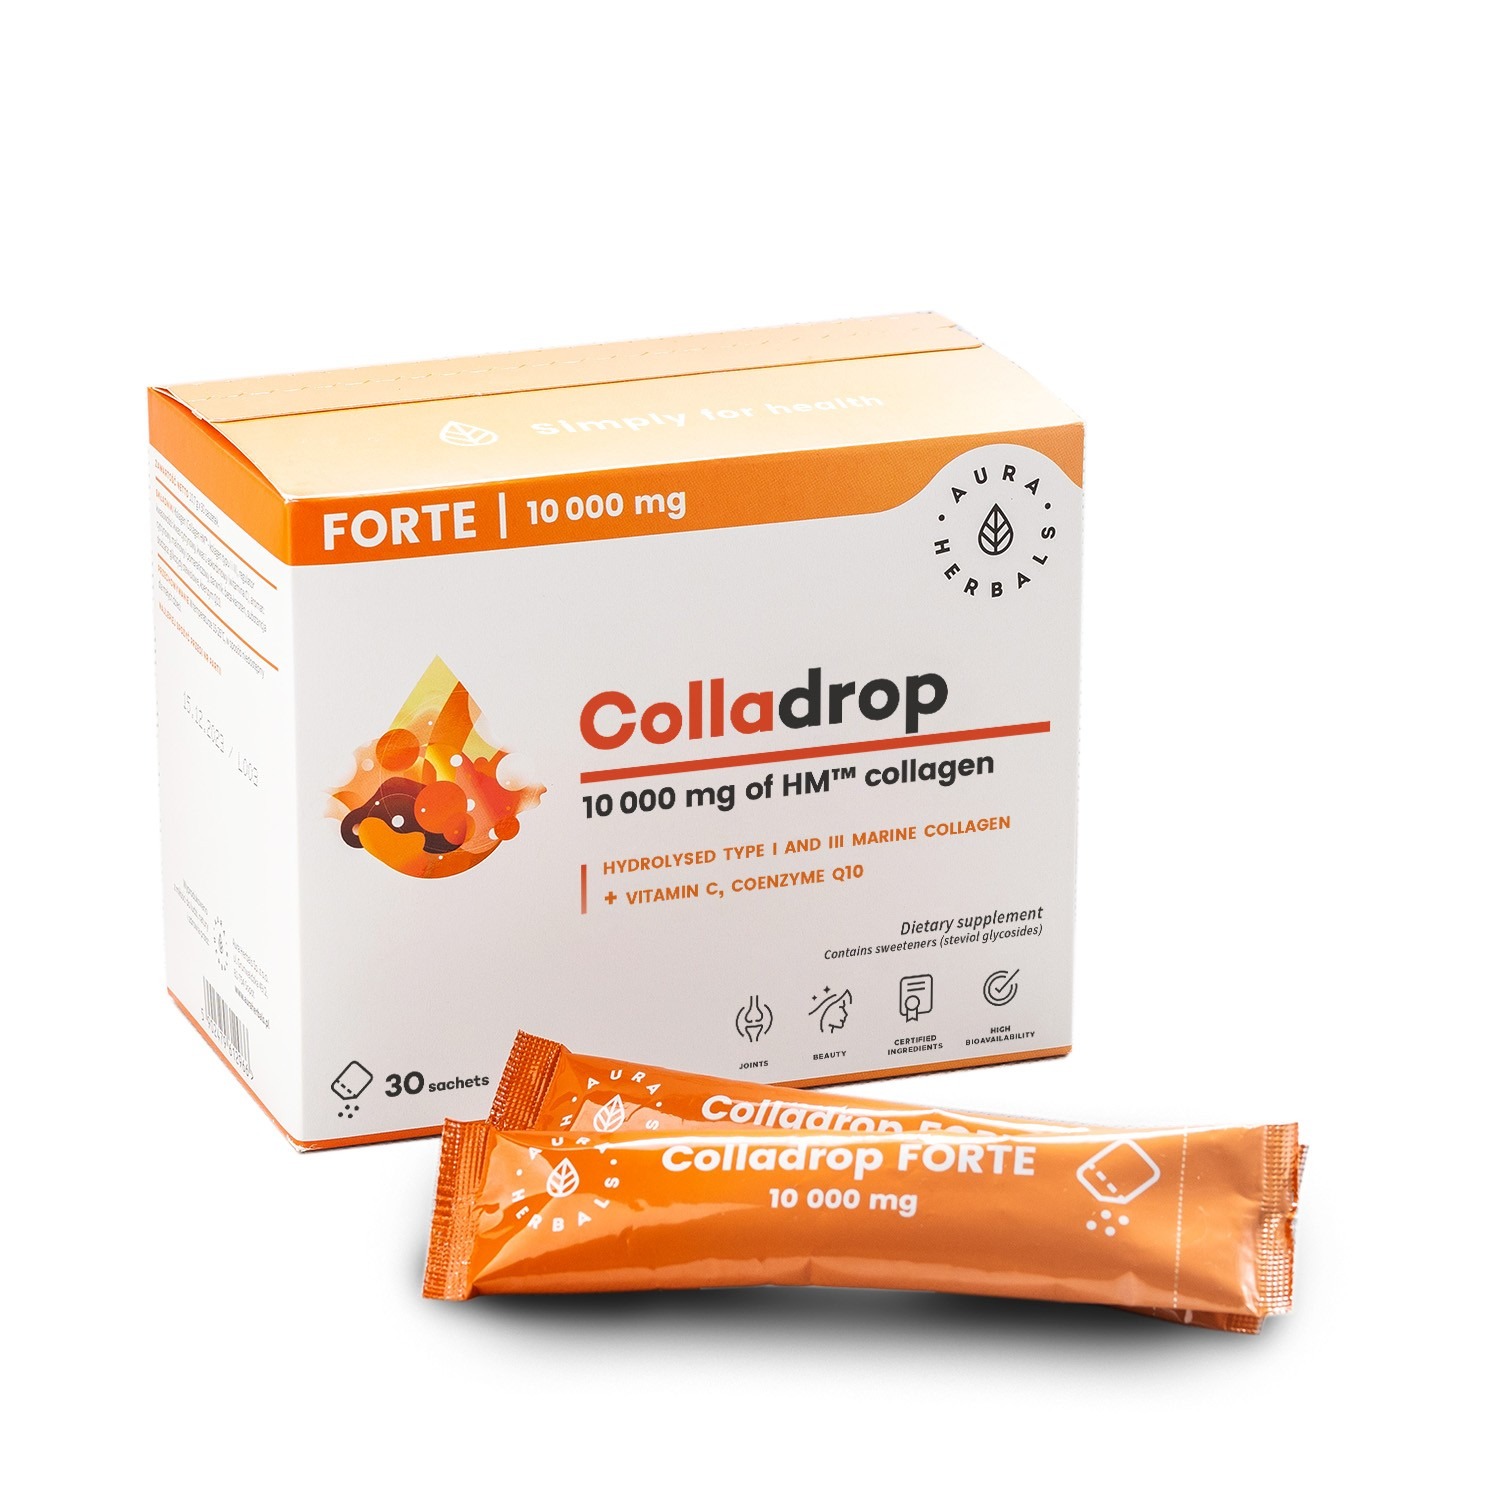 Aura Herbals Colladrop Forte, marine collagen 10000 mg, 30 sachets